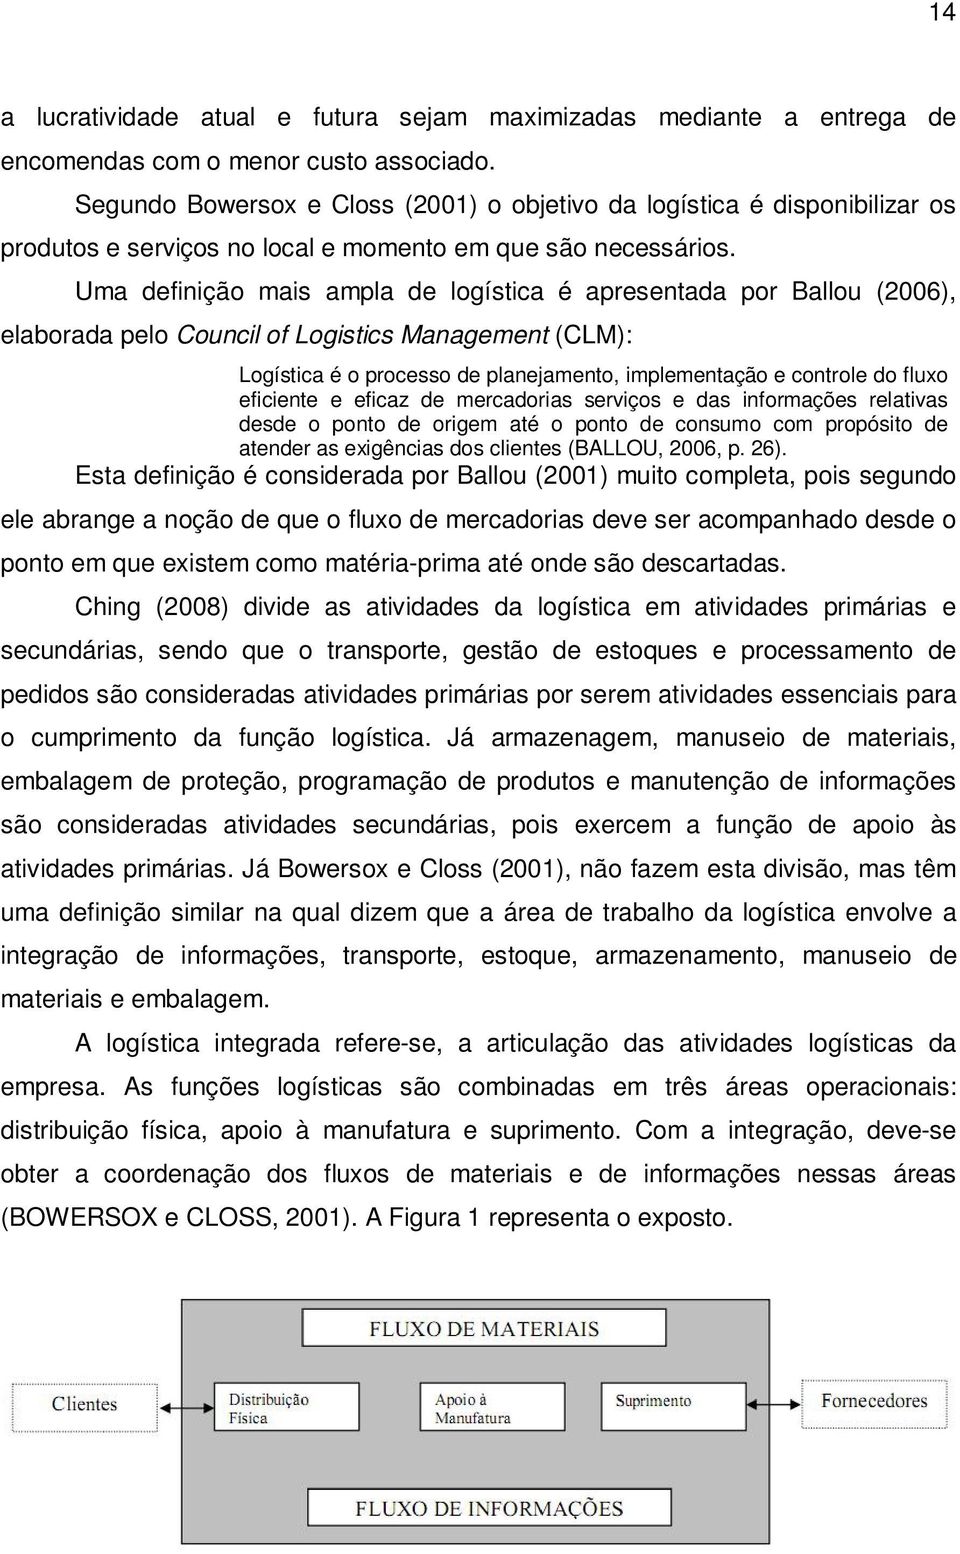 Uma definição mais ampla de logística é apresentada por Ballou (2006), elaborada pelo Council of Logistics Management (CLM): Logística é o processo de planejamento, implementação e controle do fluxo